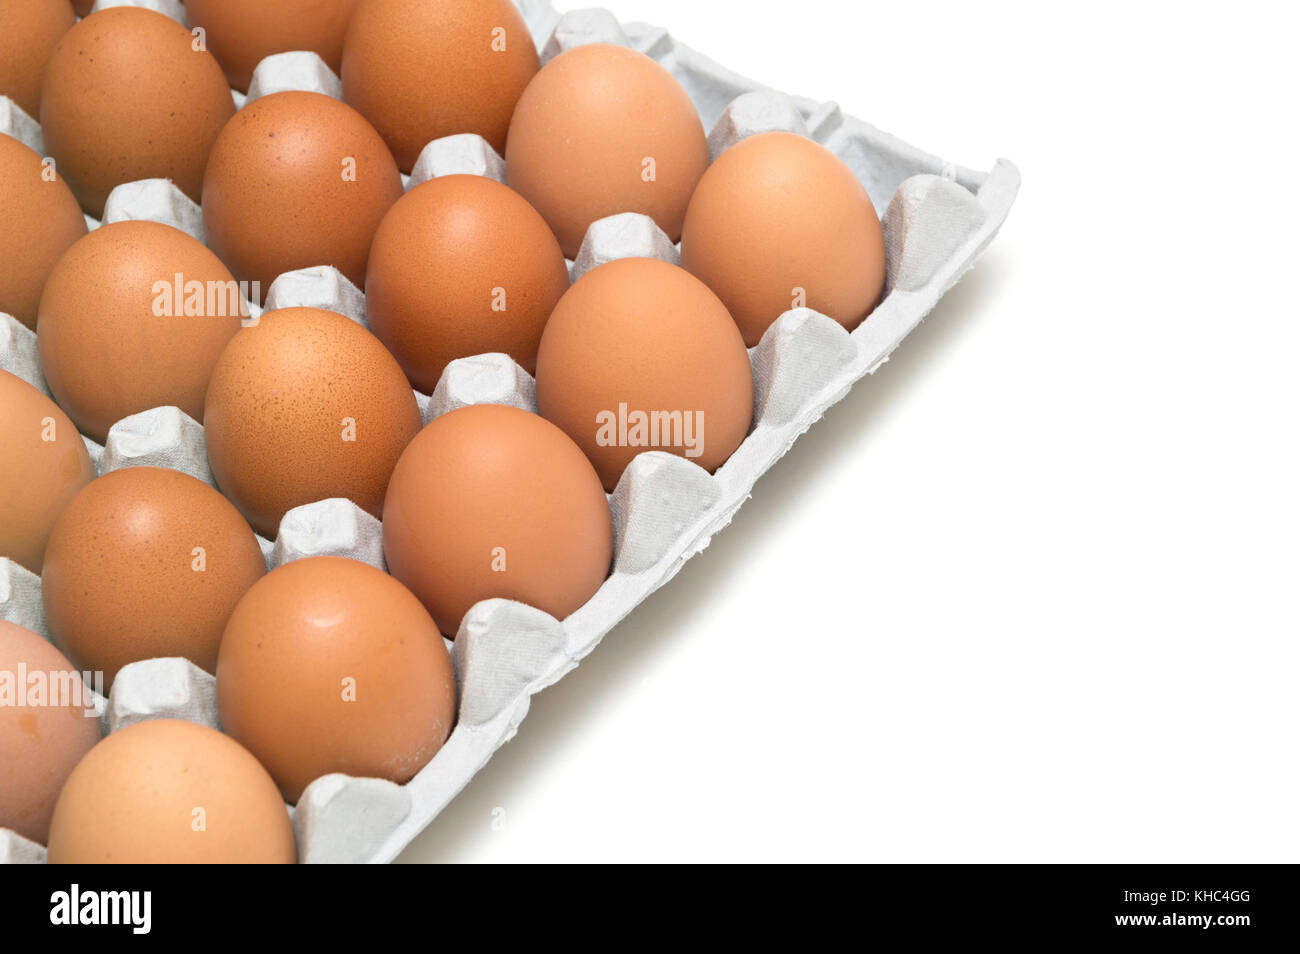 egg isolated on white background Stock Photo